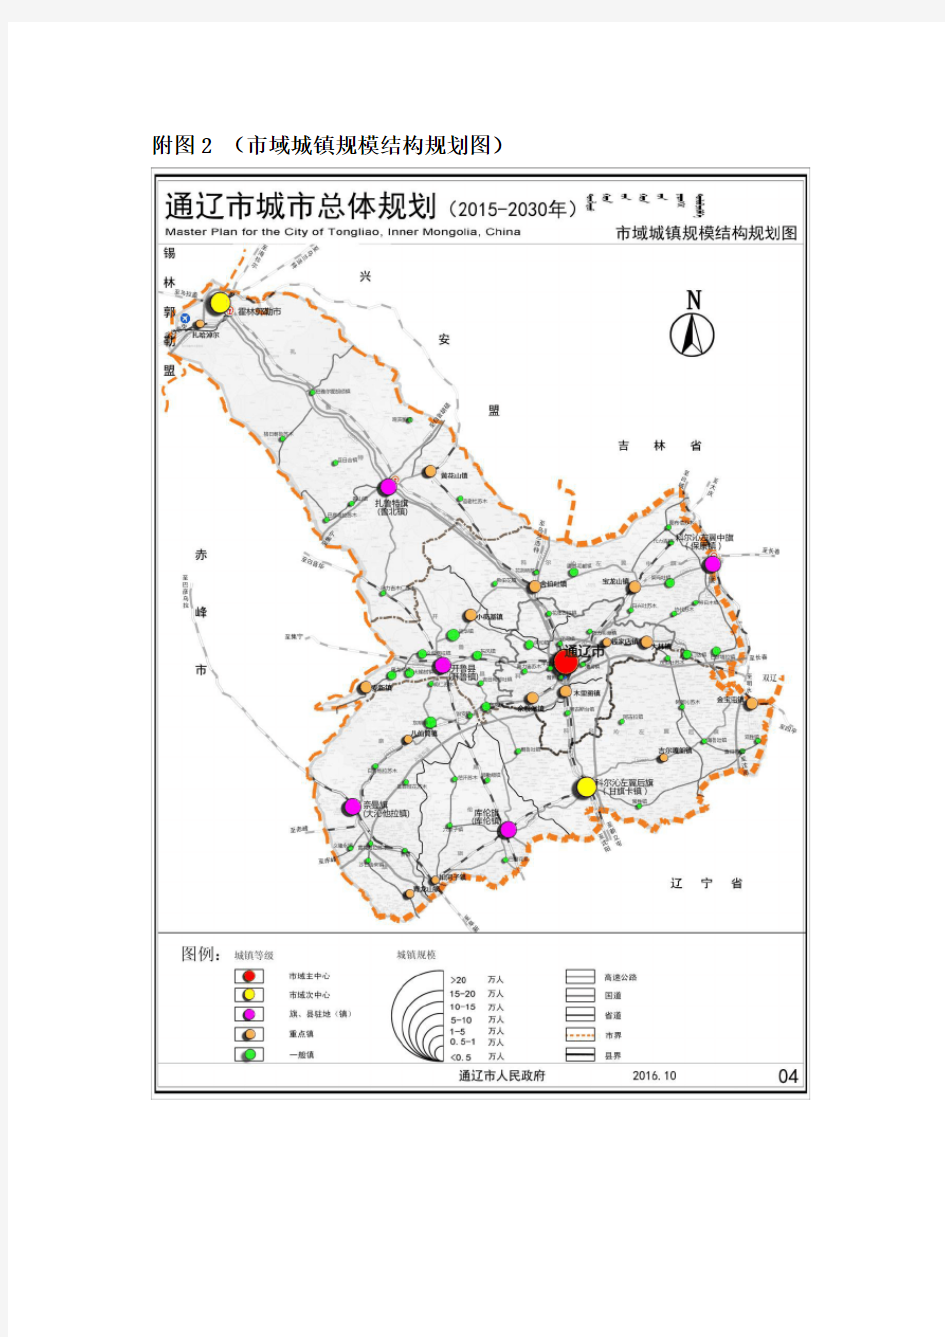 《通辽市城市总体规划(2015-2030)》(批后公布)主要图纸